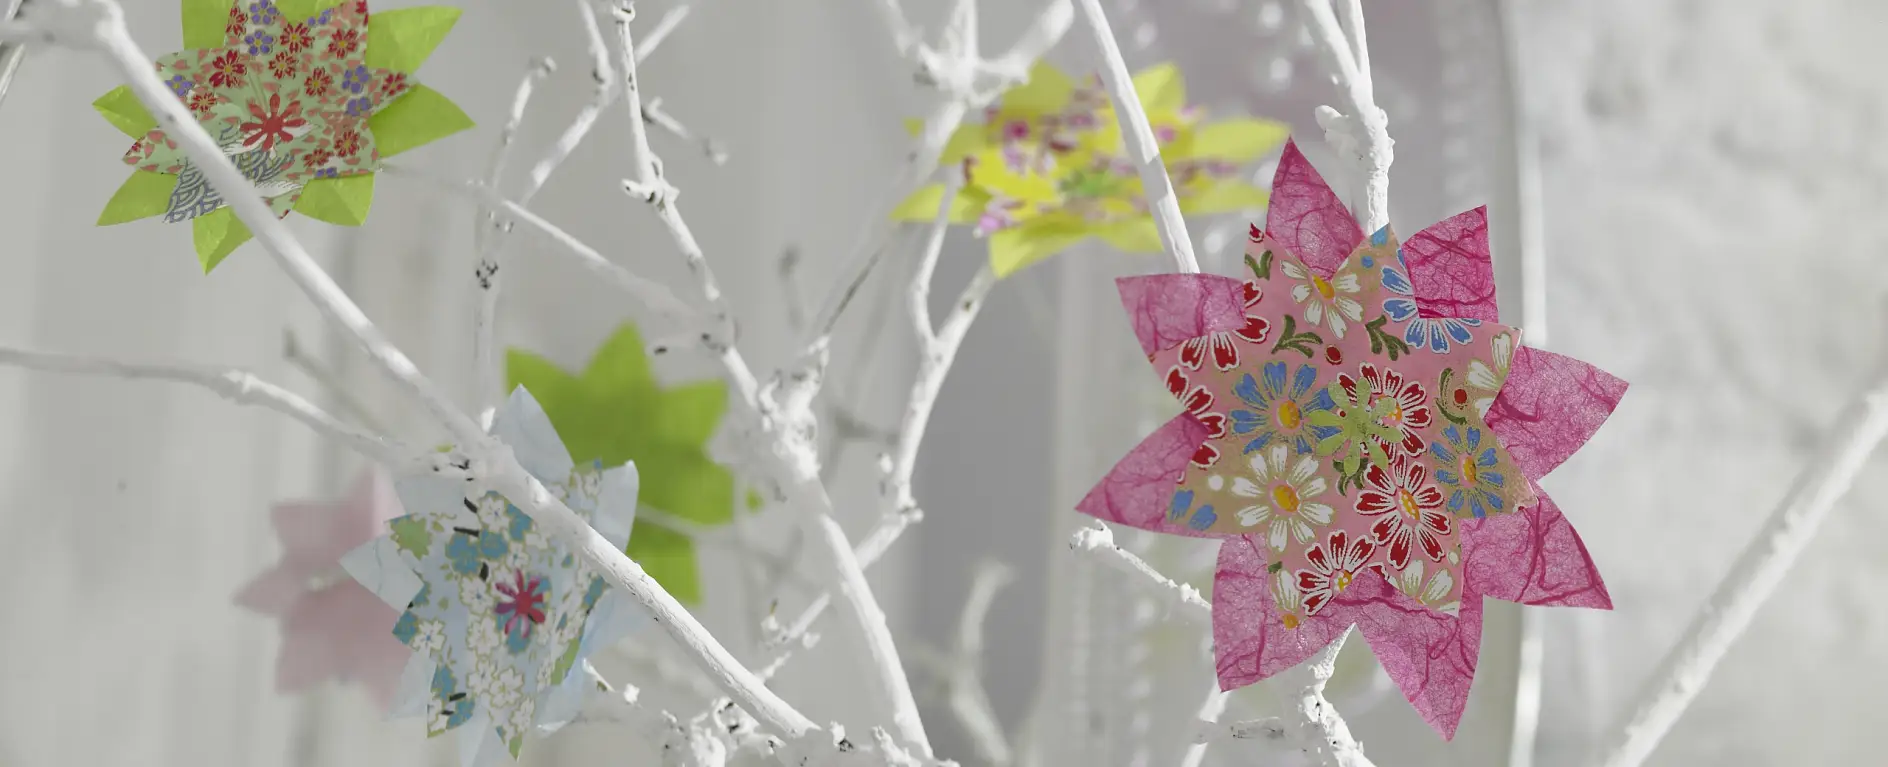 Bunte Blumen im Origami-Stil lassen die weißen Zweige aufblühen.